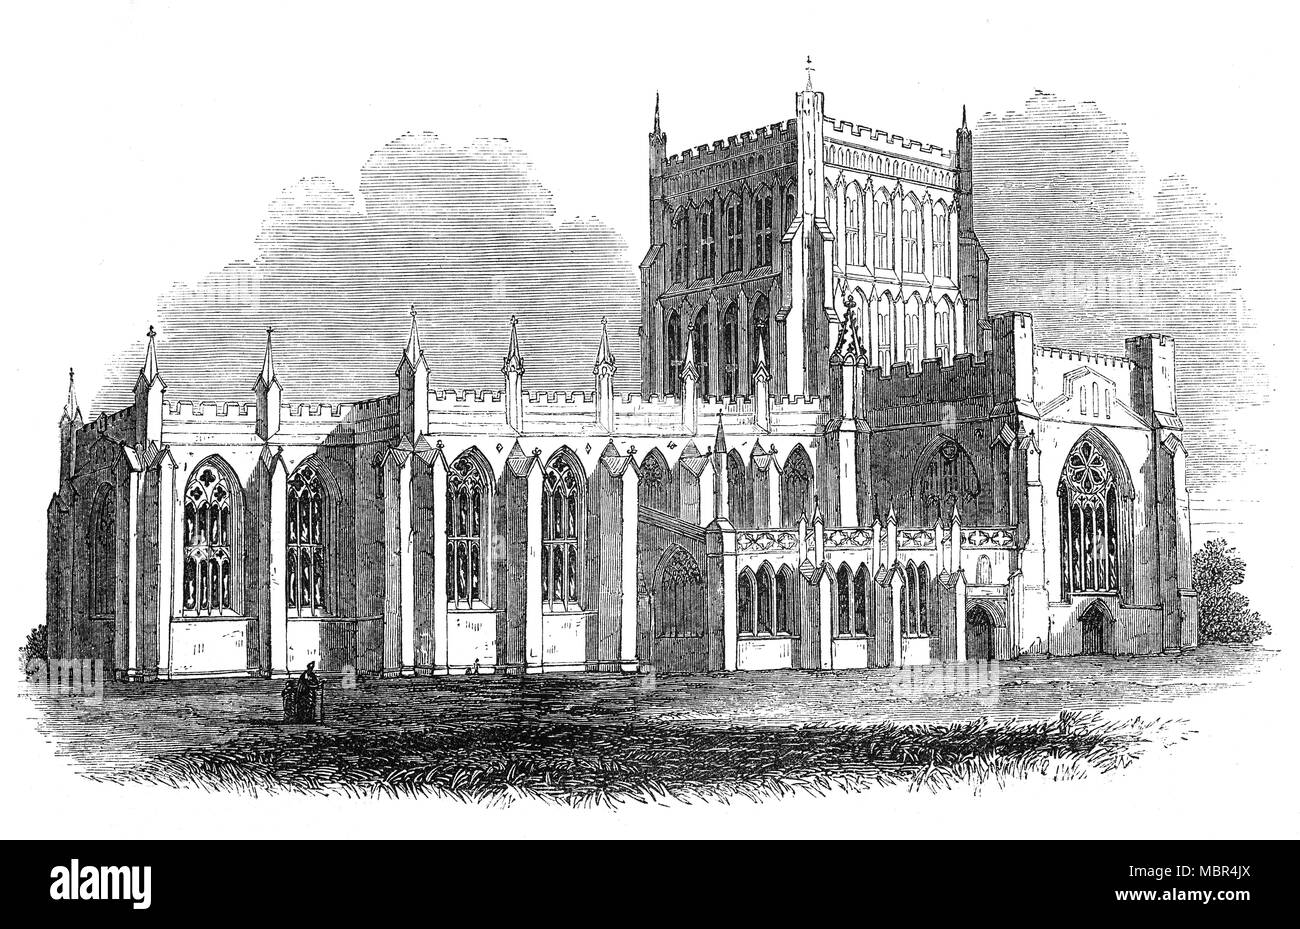 La cathédrale de Bristol, officiellement l'église cathédrale de la Sainte et indivisible Trinité, est l'Église d'Angleterre dans la cathédrale de la ville de Bristol, Angleterre. Fondée en 1140 et consacrée en 1148, il était à l'origine abbaye Saint-Augustin mais après la dissolution des monastères, il est devenu en 1542 la cathédrale du nouveau diocèse de Bristol. Une grande partie de l'église fut reconstruite dans le style gothique anglais au cours de la 14e siècle et au 15ème siècle, le transept et la tour centrale a été ajouté. Au 19e siècle une nouvelle nef néo-gothique a été construite en partie en utilisant les plans d'origine. Banque D'Images